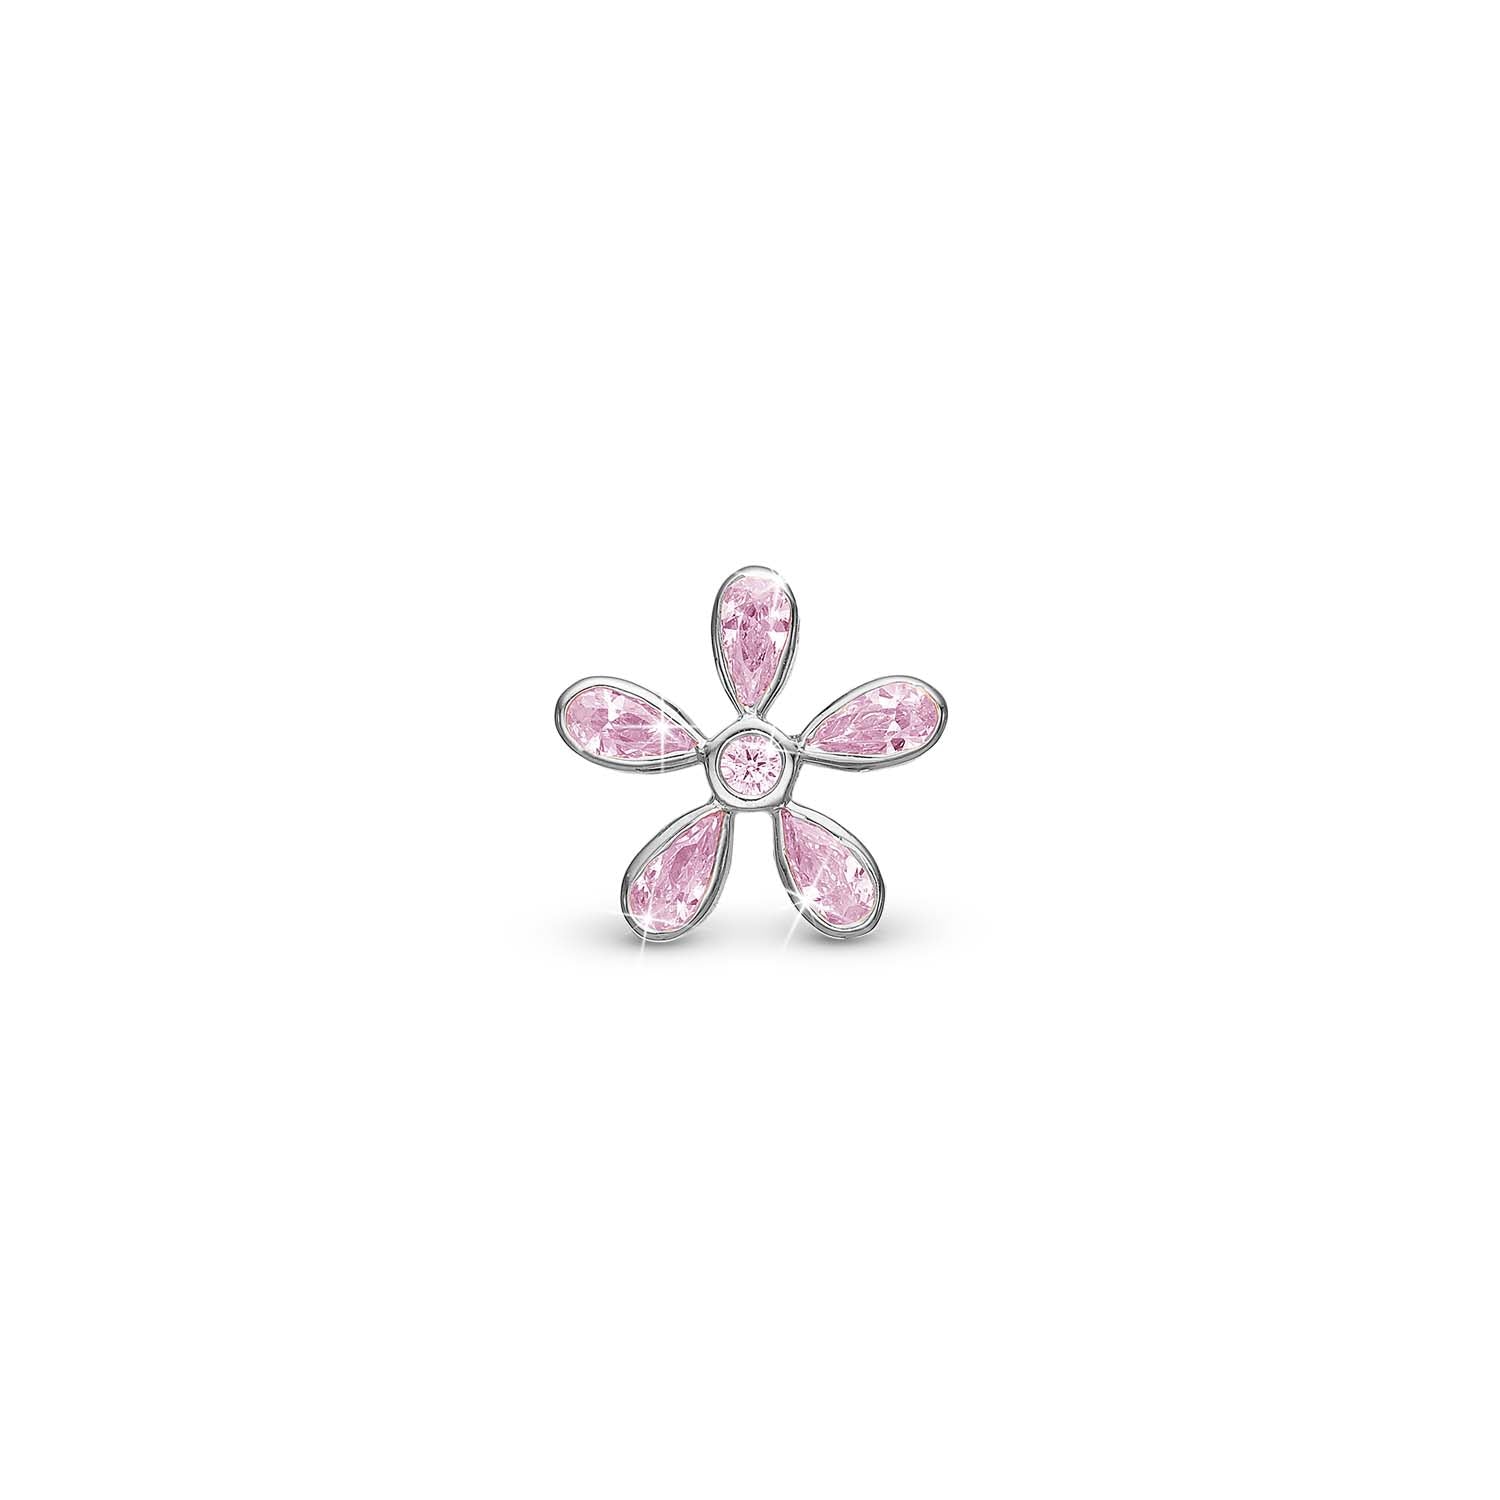 Billede af Christina Design London Jewelry & Watches - Magical pink Flower charm, 4 mm Sterlingsølv